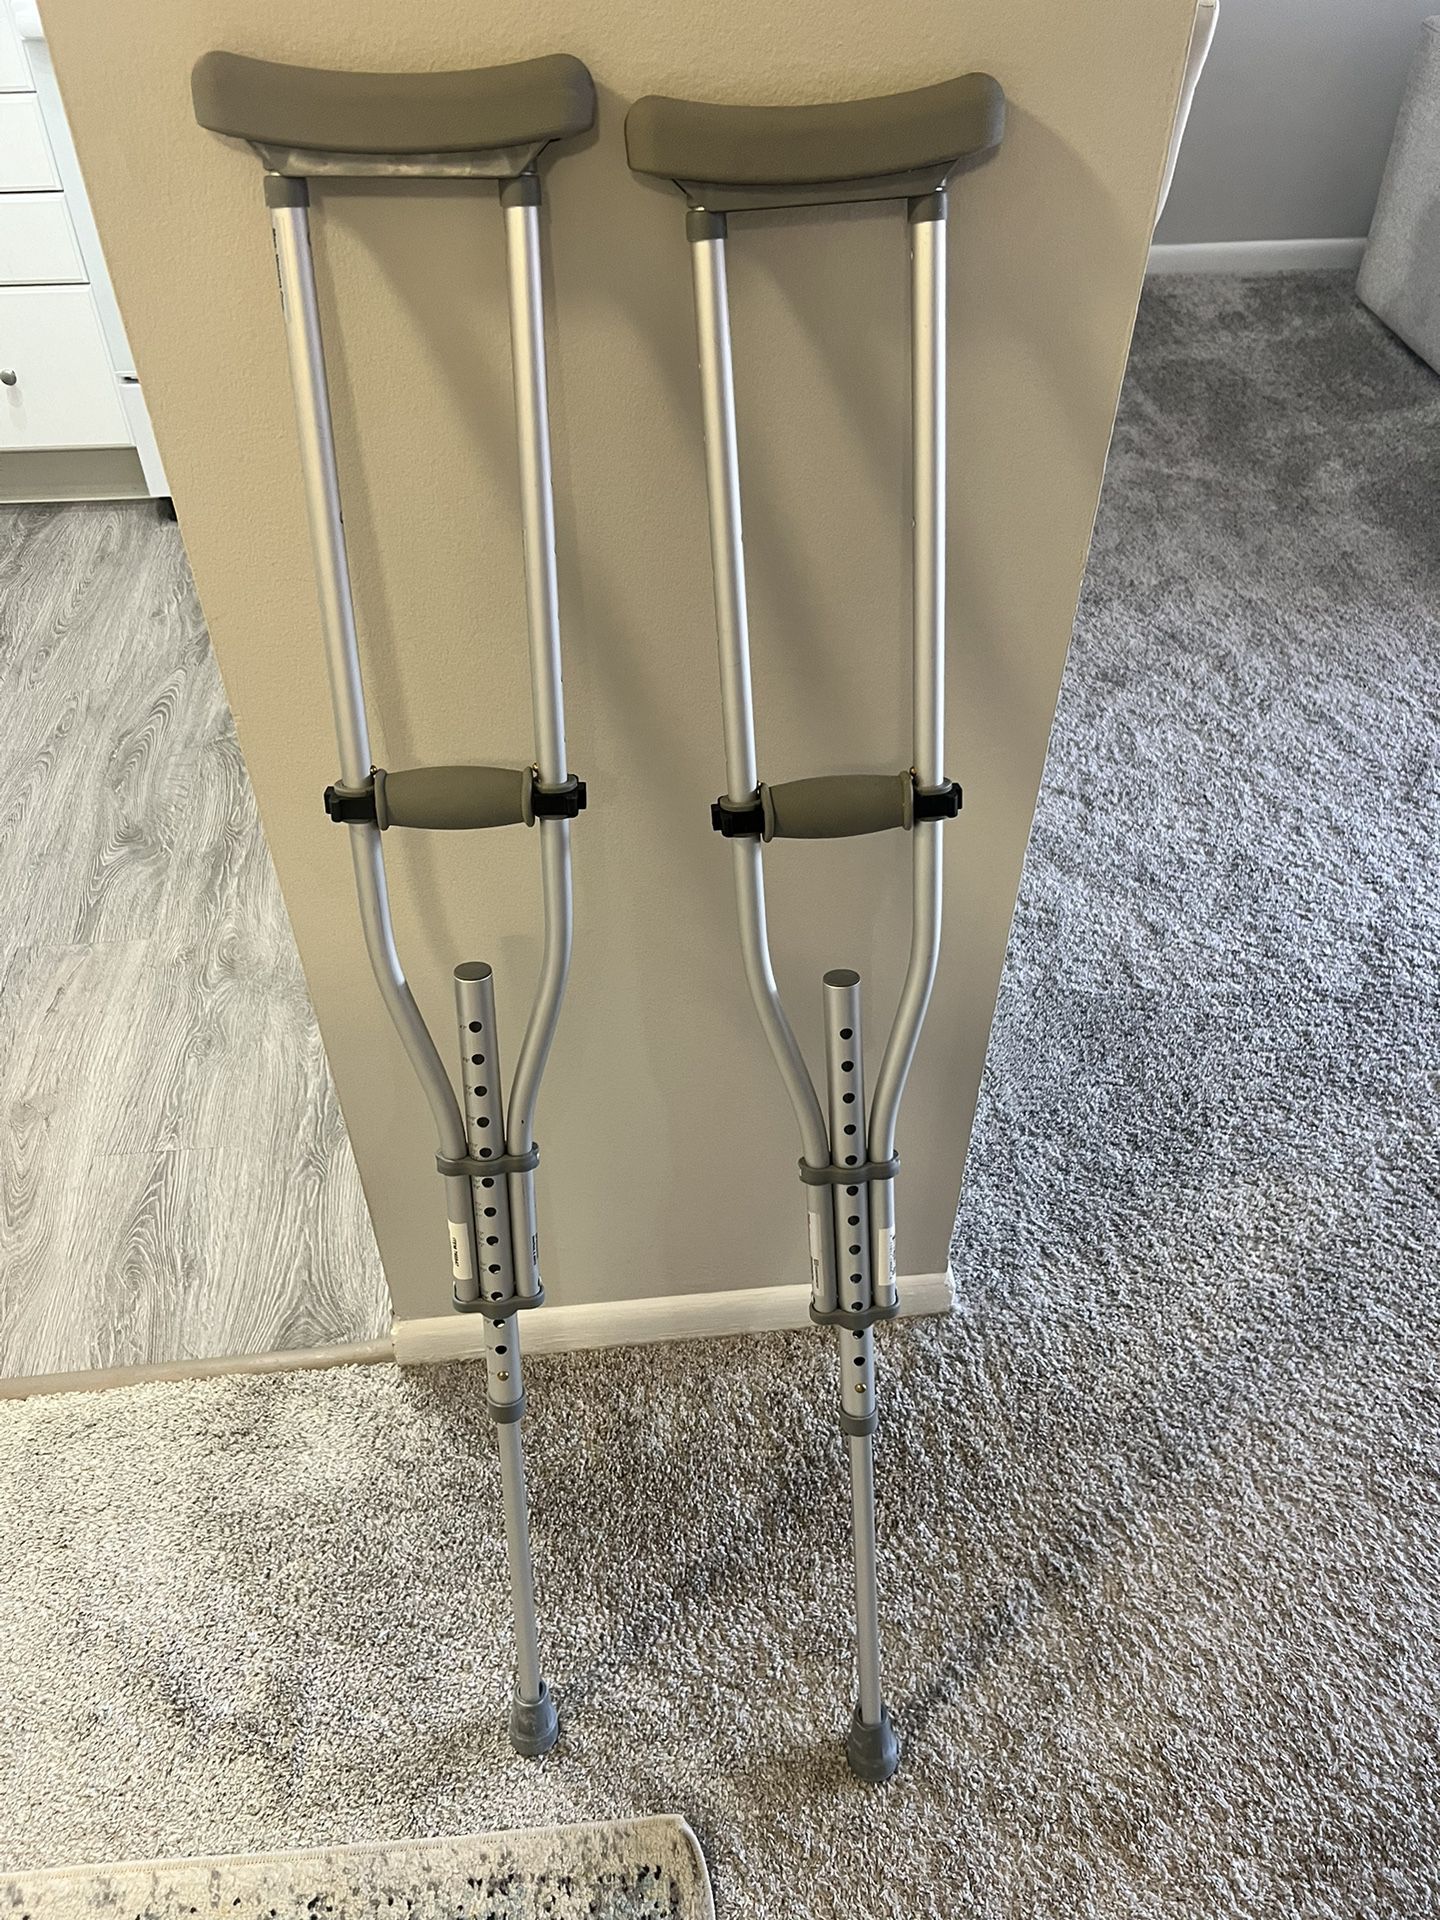  Crutches